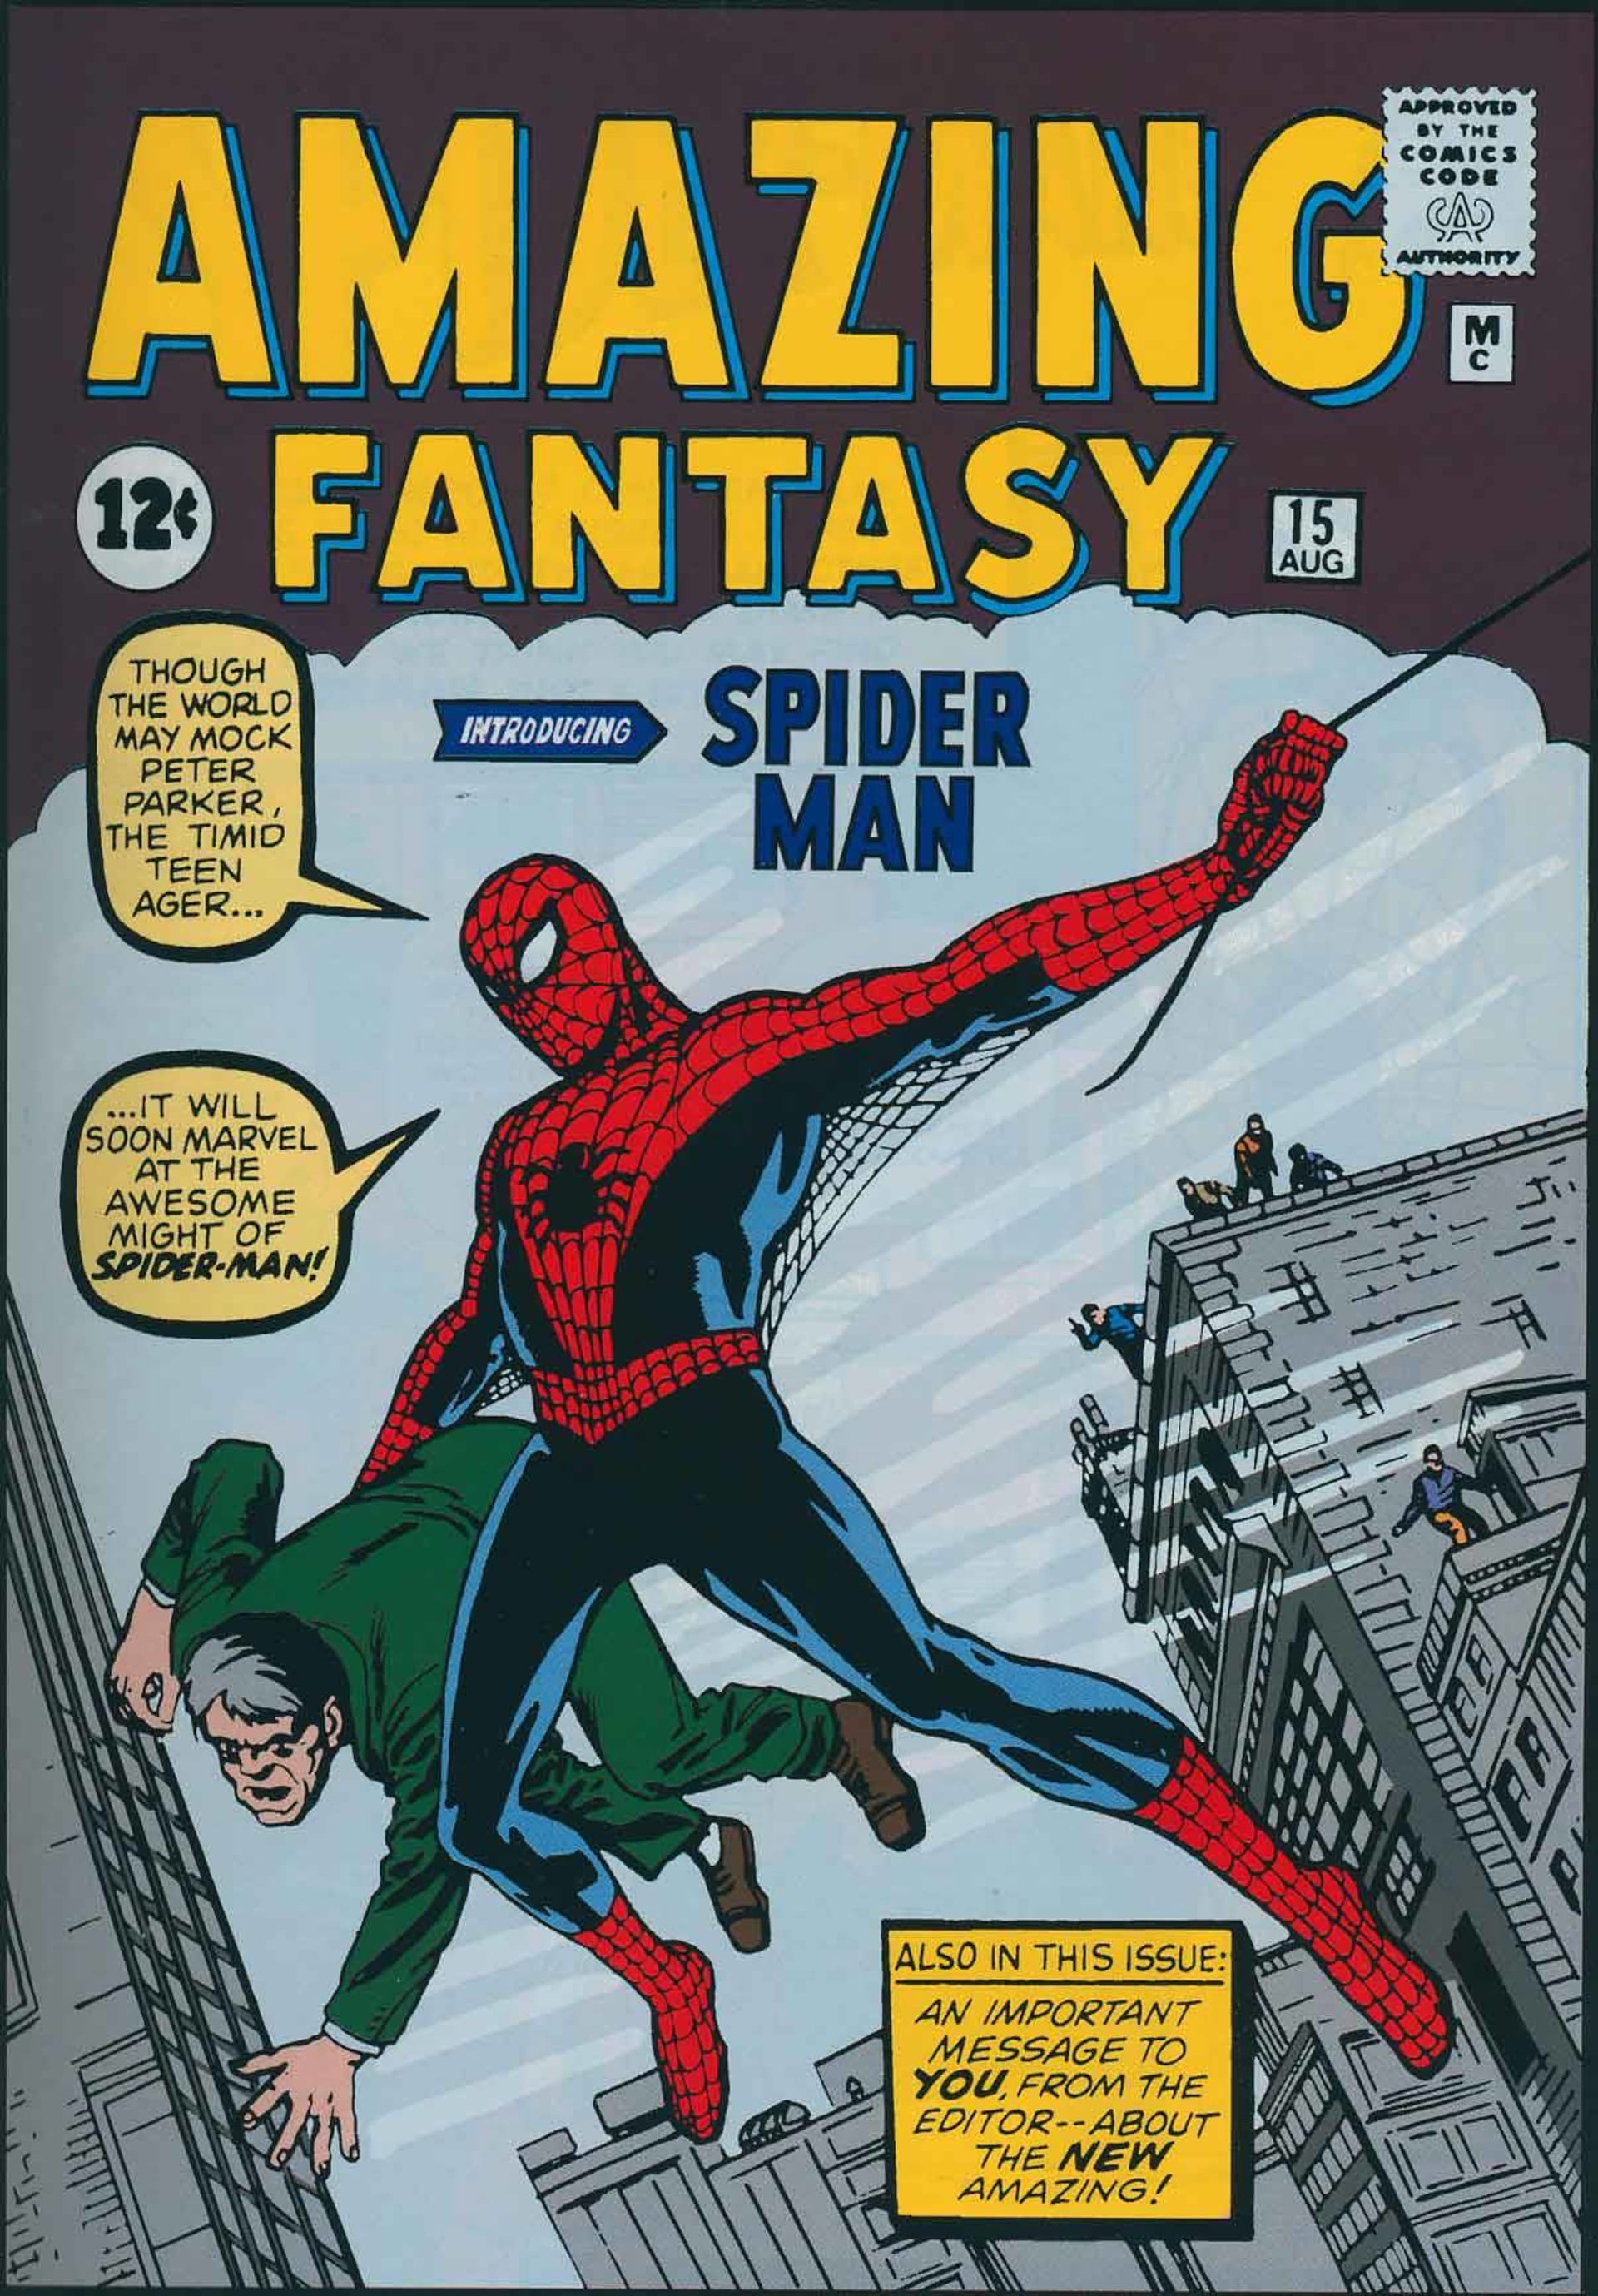 Spider-Manova premiéra v Amazing Fantasy #15 (srpen 1962)